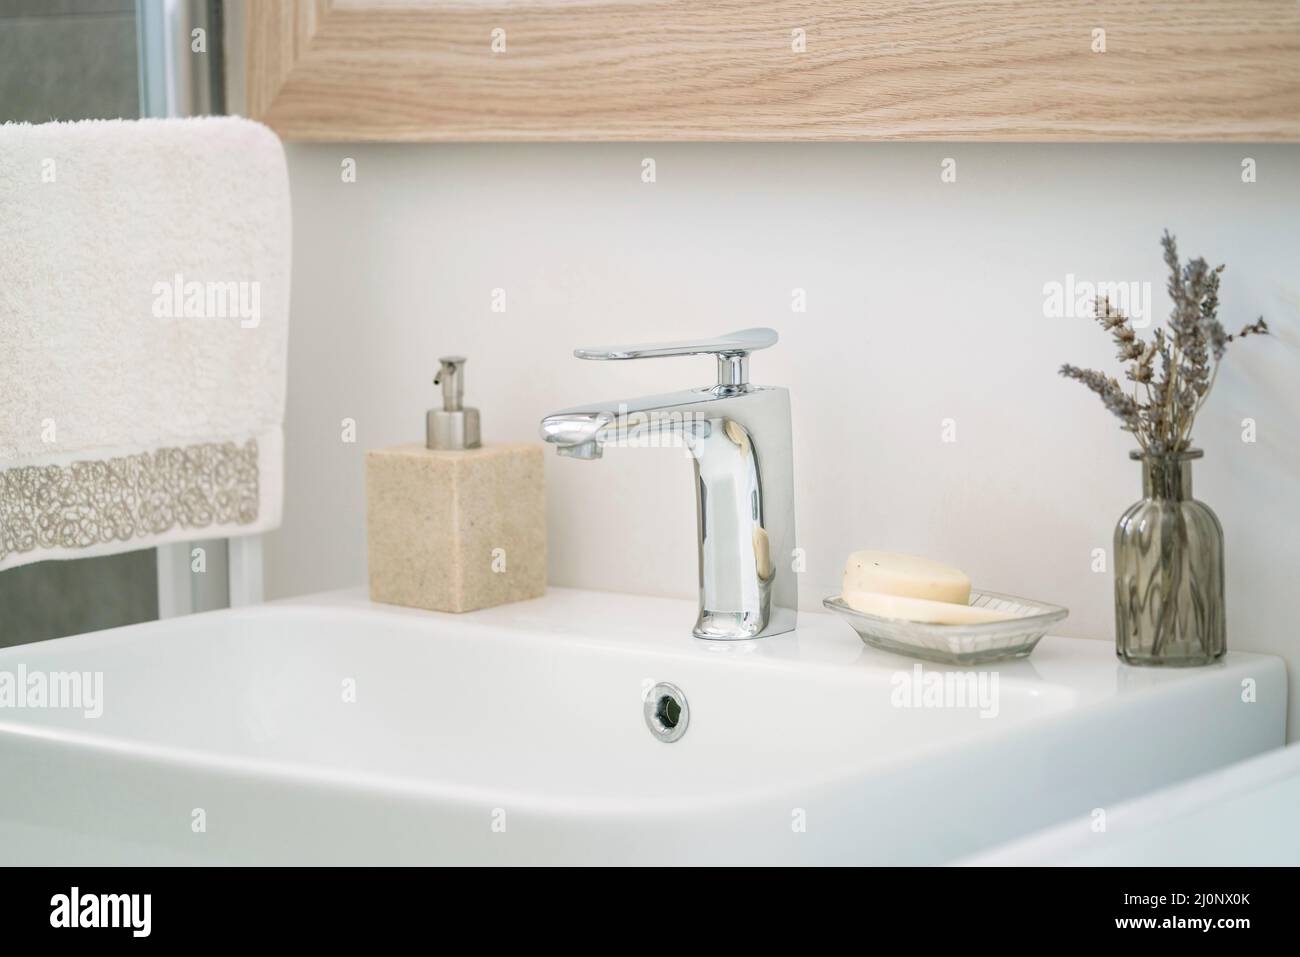 salle de bains, serviette pendue et bouteille de savon liquide par un lavabo blanc dans la salle de bains à l'intérieur de la maison. robinets et savons sur le lavabo blanc et propre dans le dôme Banque D'Images